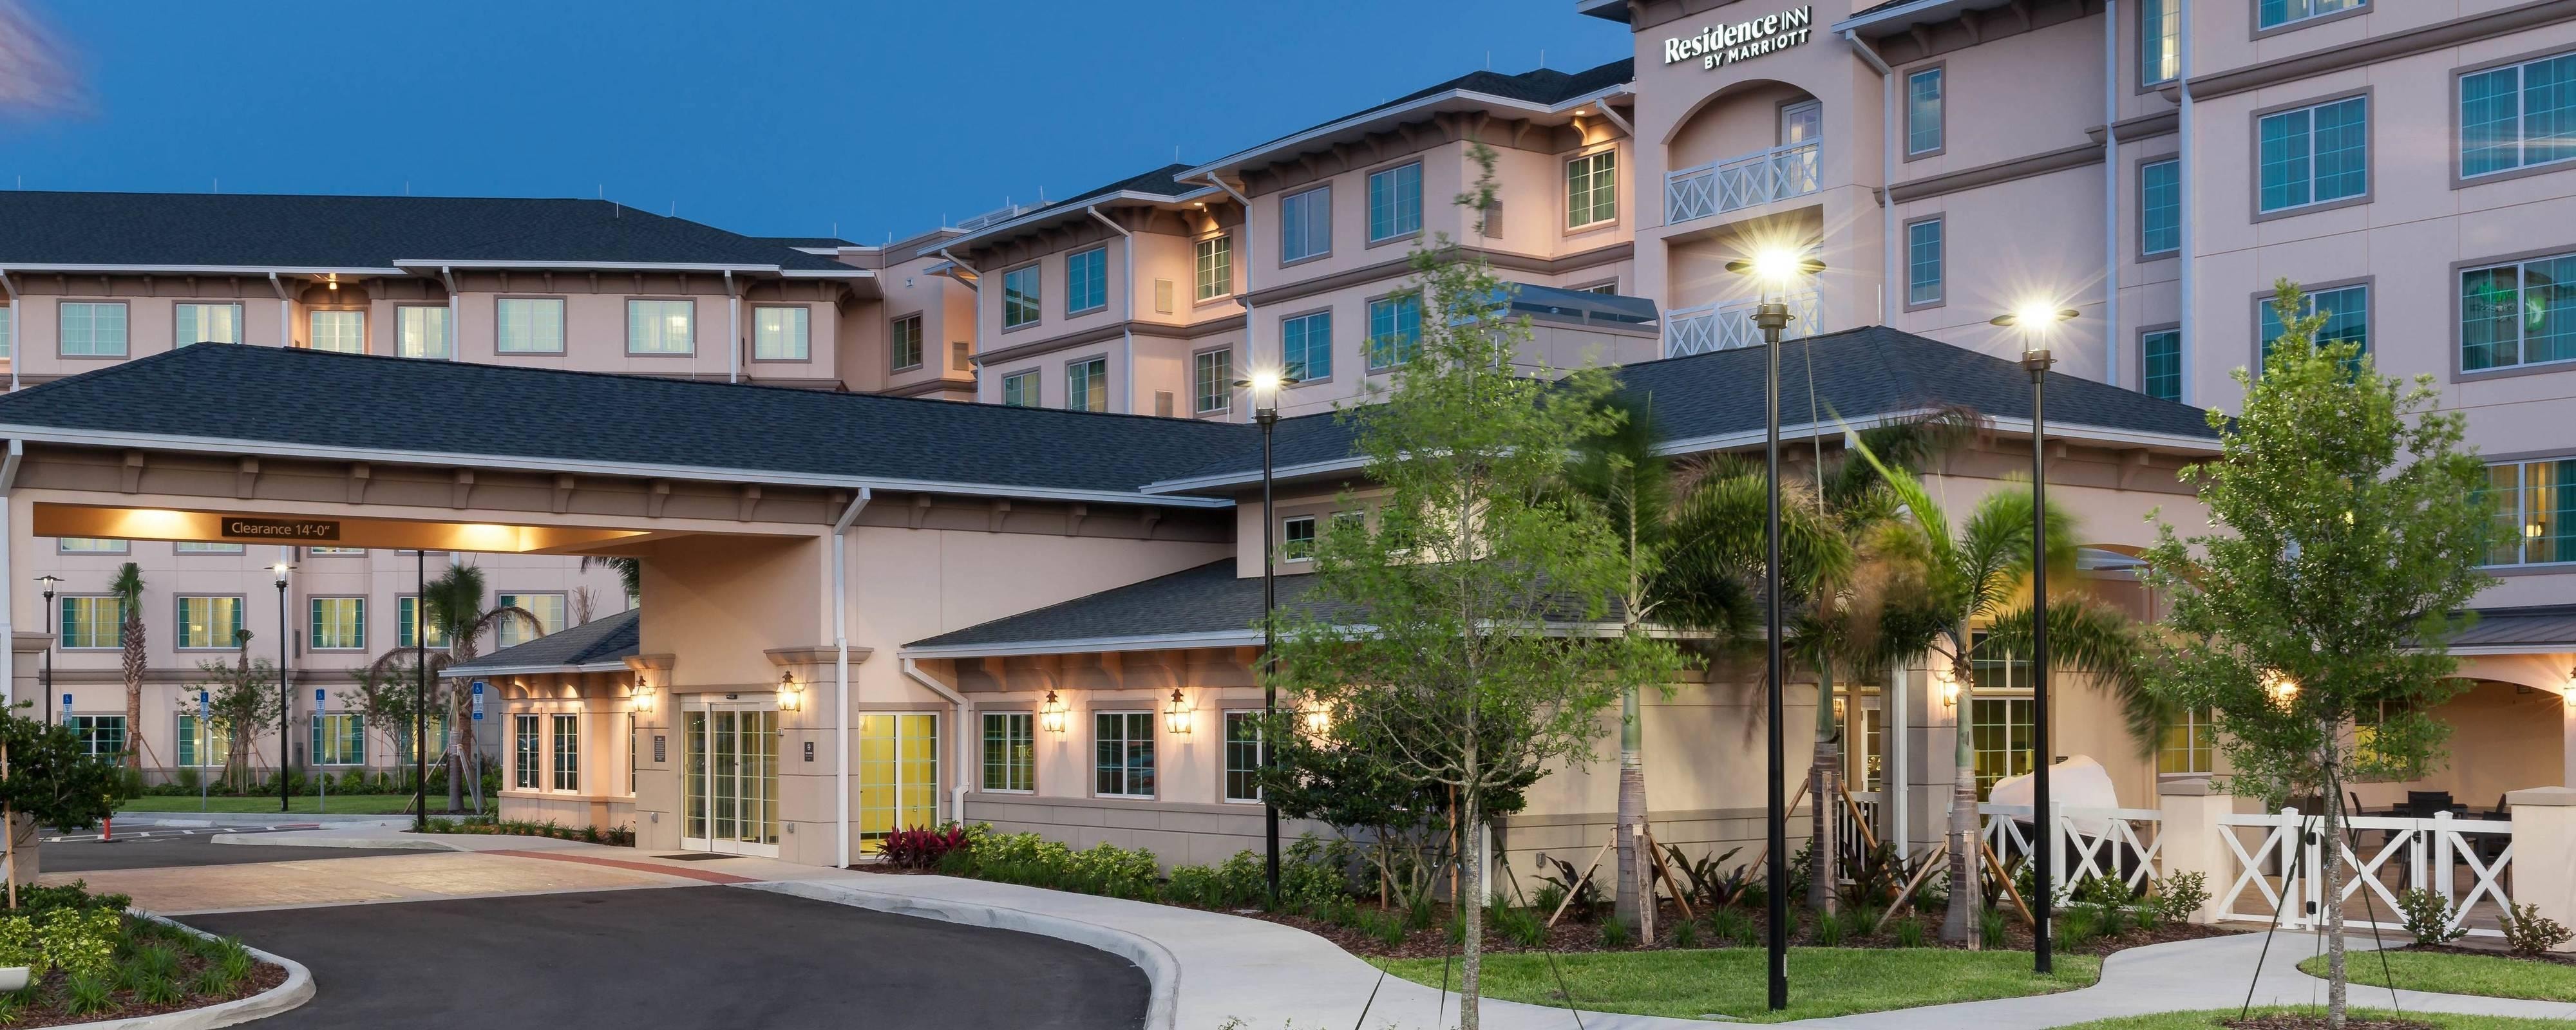 Universal Orlando™ Hotel Details | Residence Inn near ...